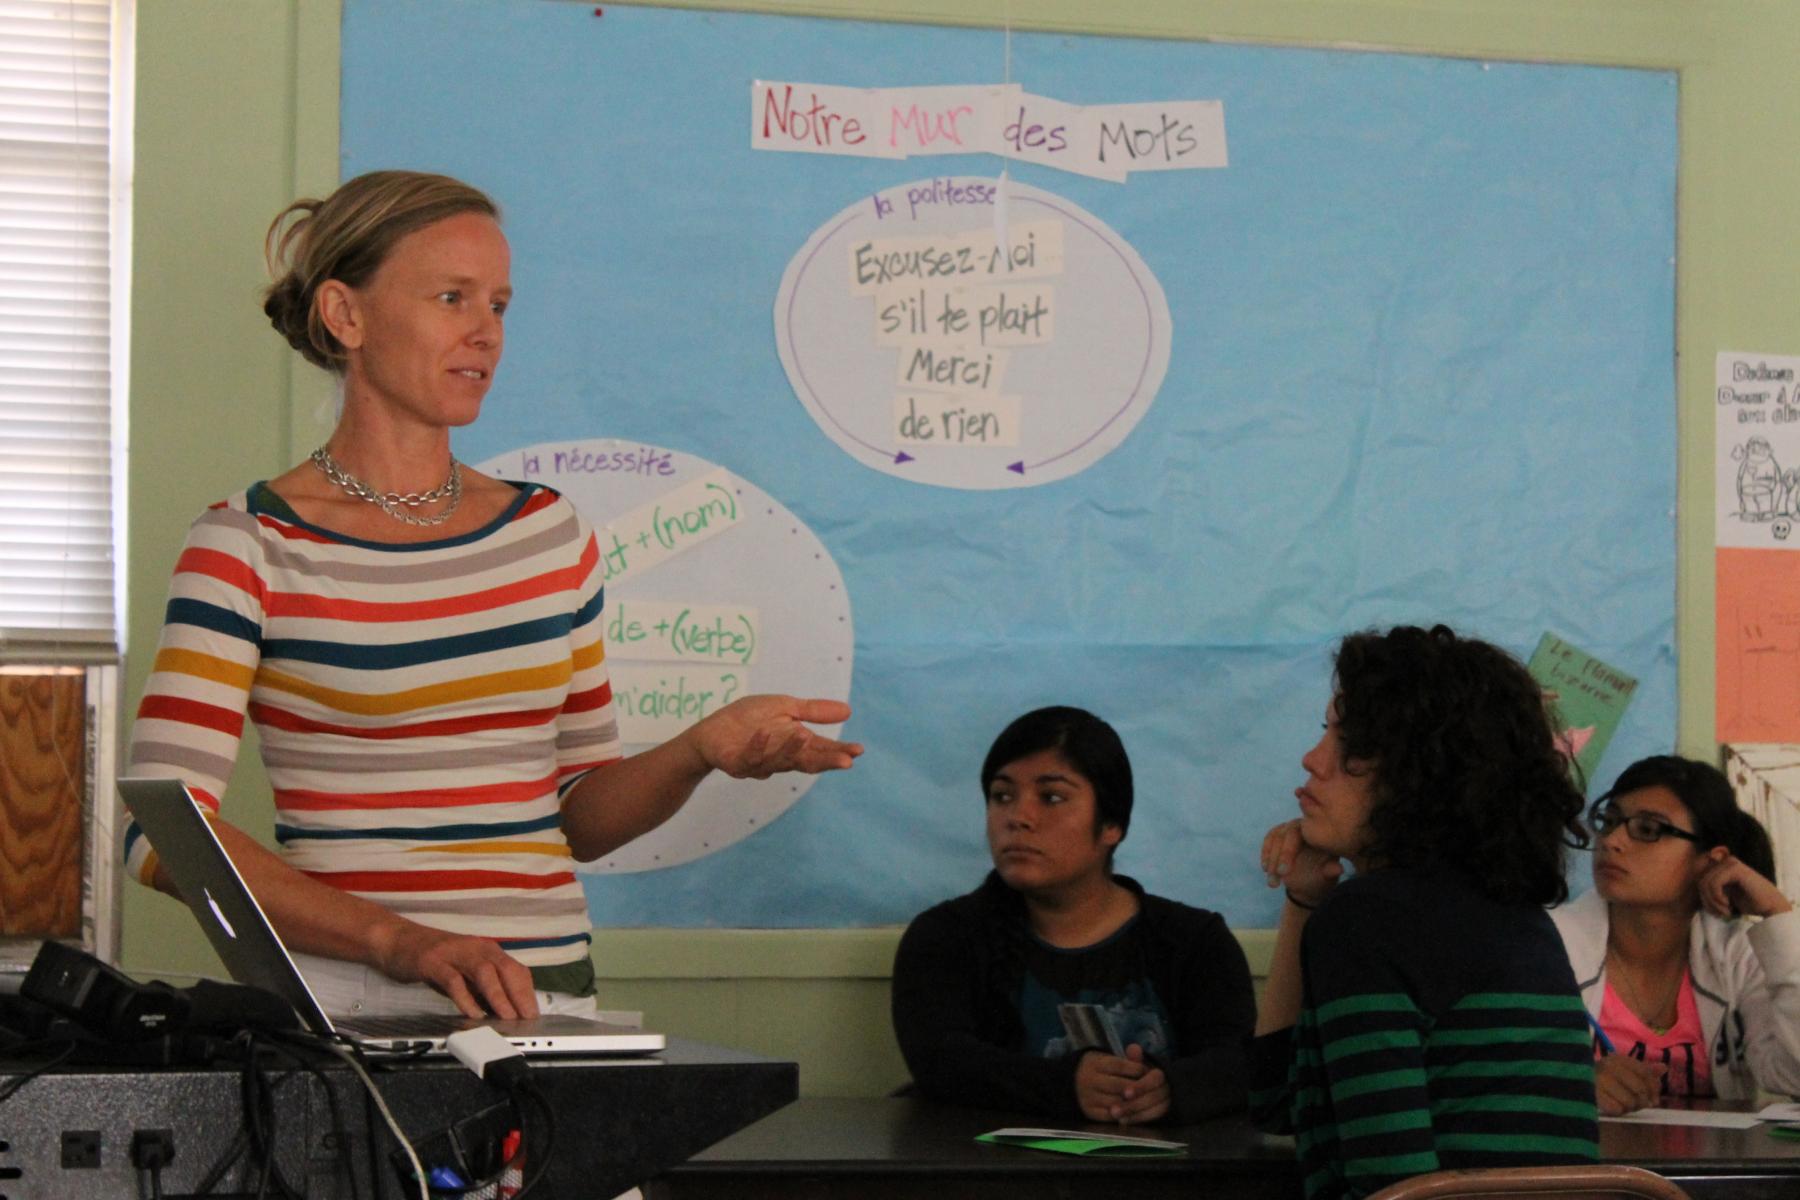 Artist Adriane Colburn speaking to students at Marfa Senior High School, 30 August 2012. Photo by Jessica Brassler.